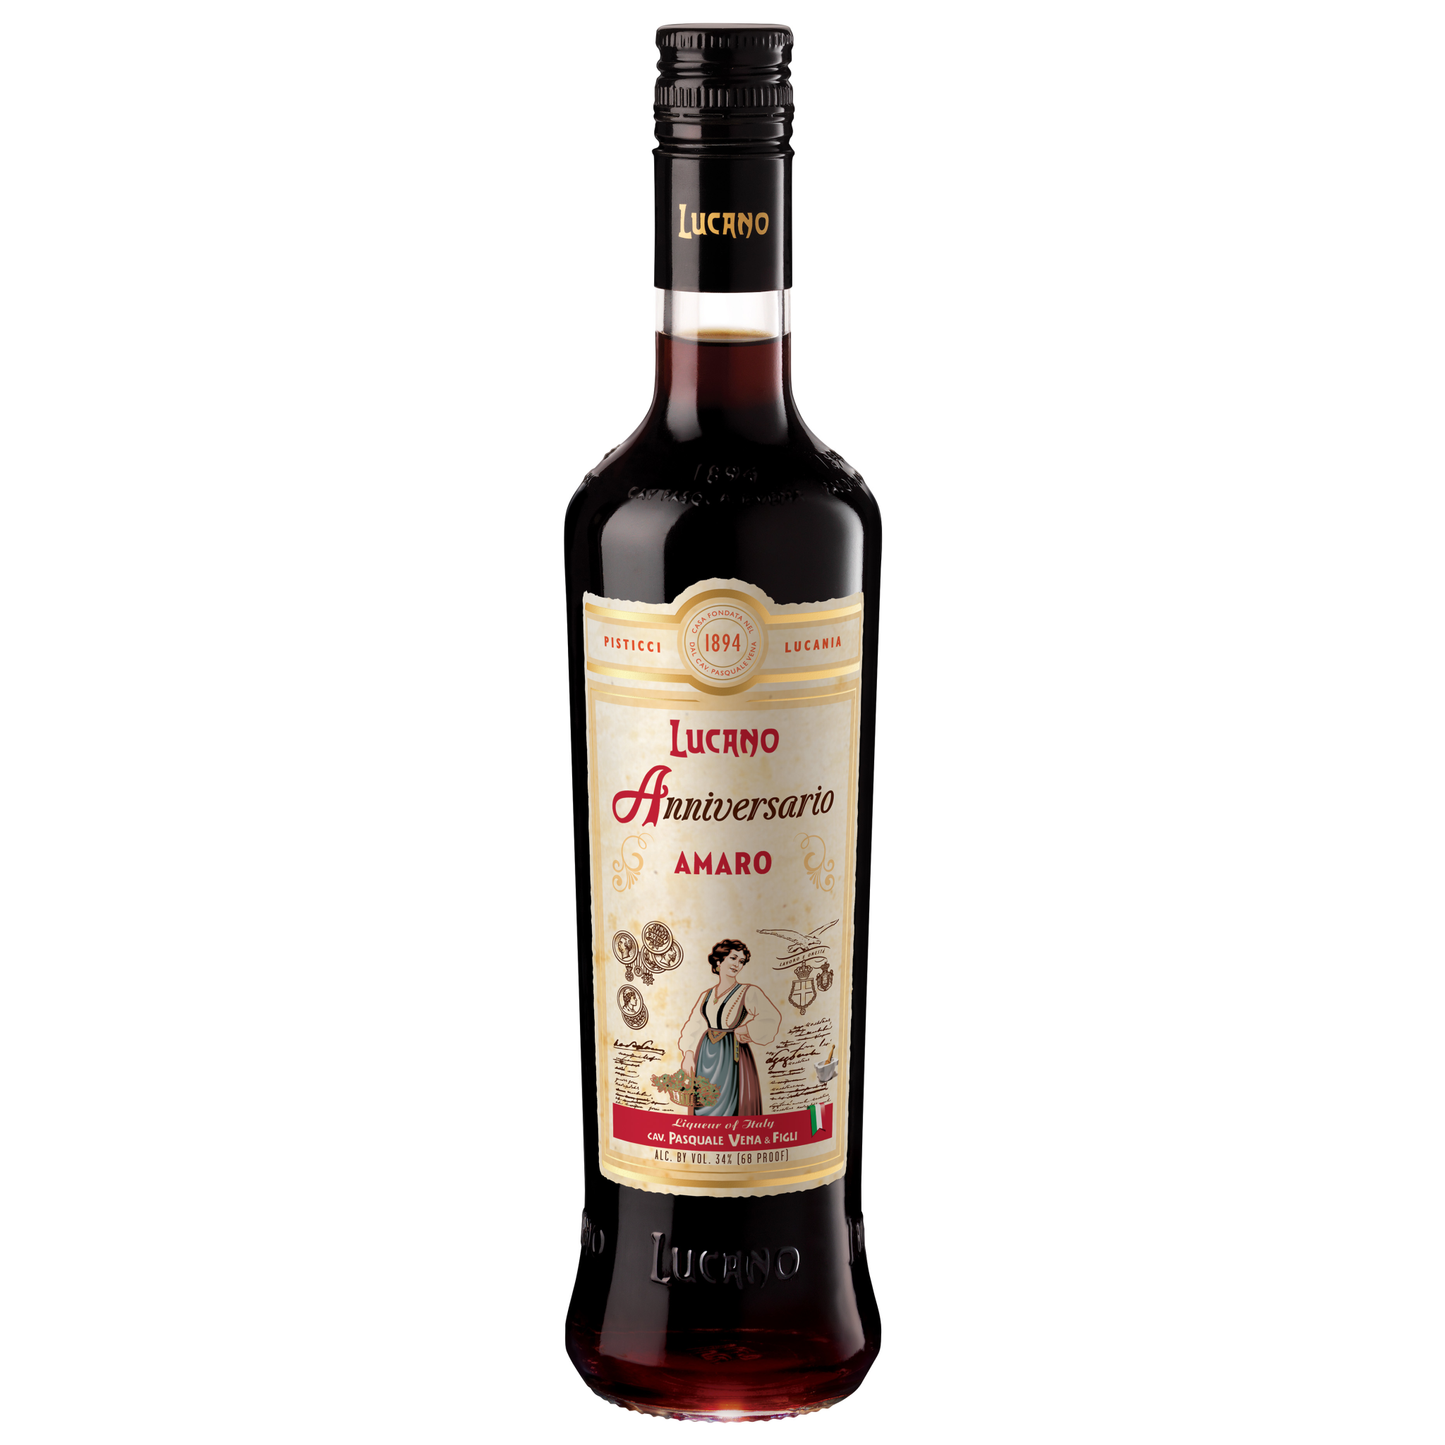 Lucano Anniversario Amaro Liqueur/Liquor - Liquor Geeks